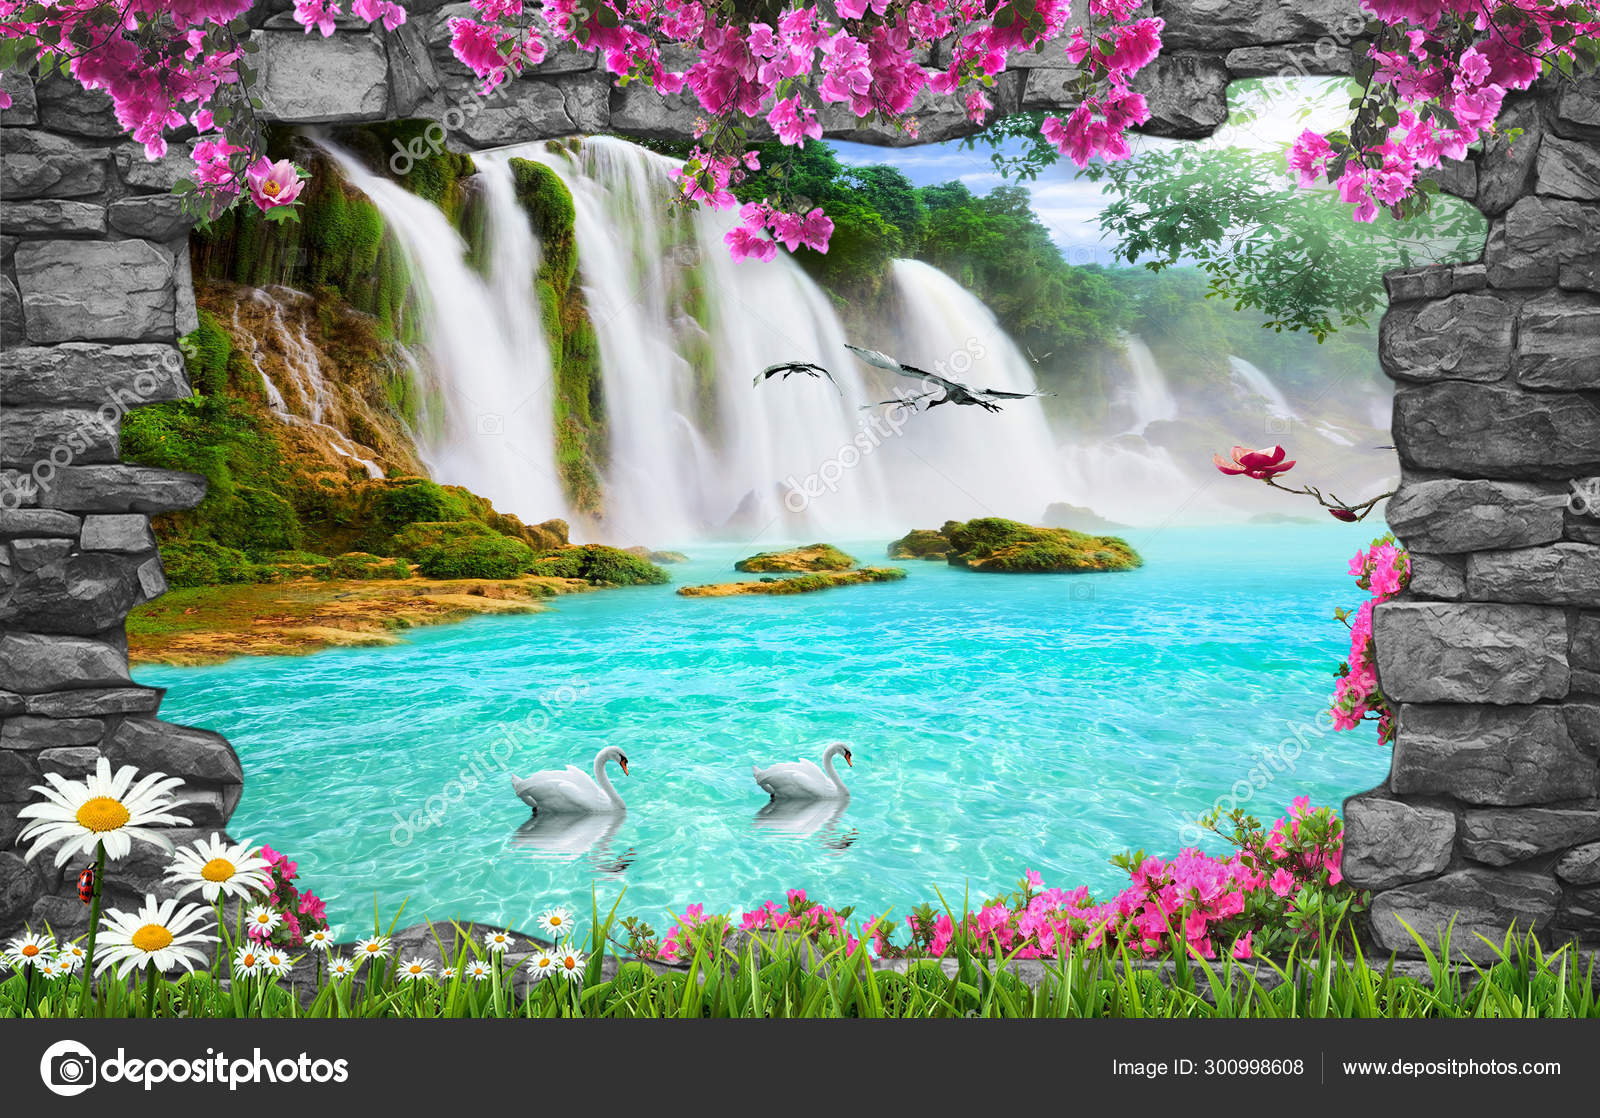 Amazing Nature Background Wallpaper Stock Photo by ©Zevahir 300998608